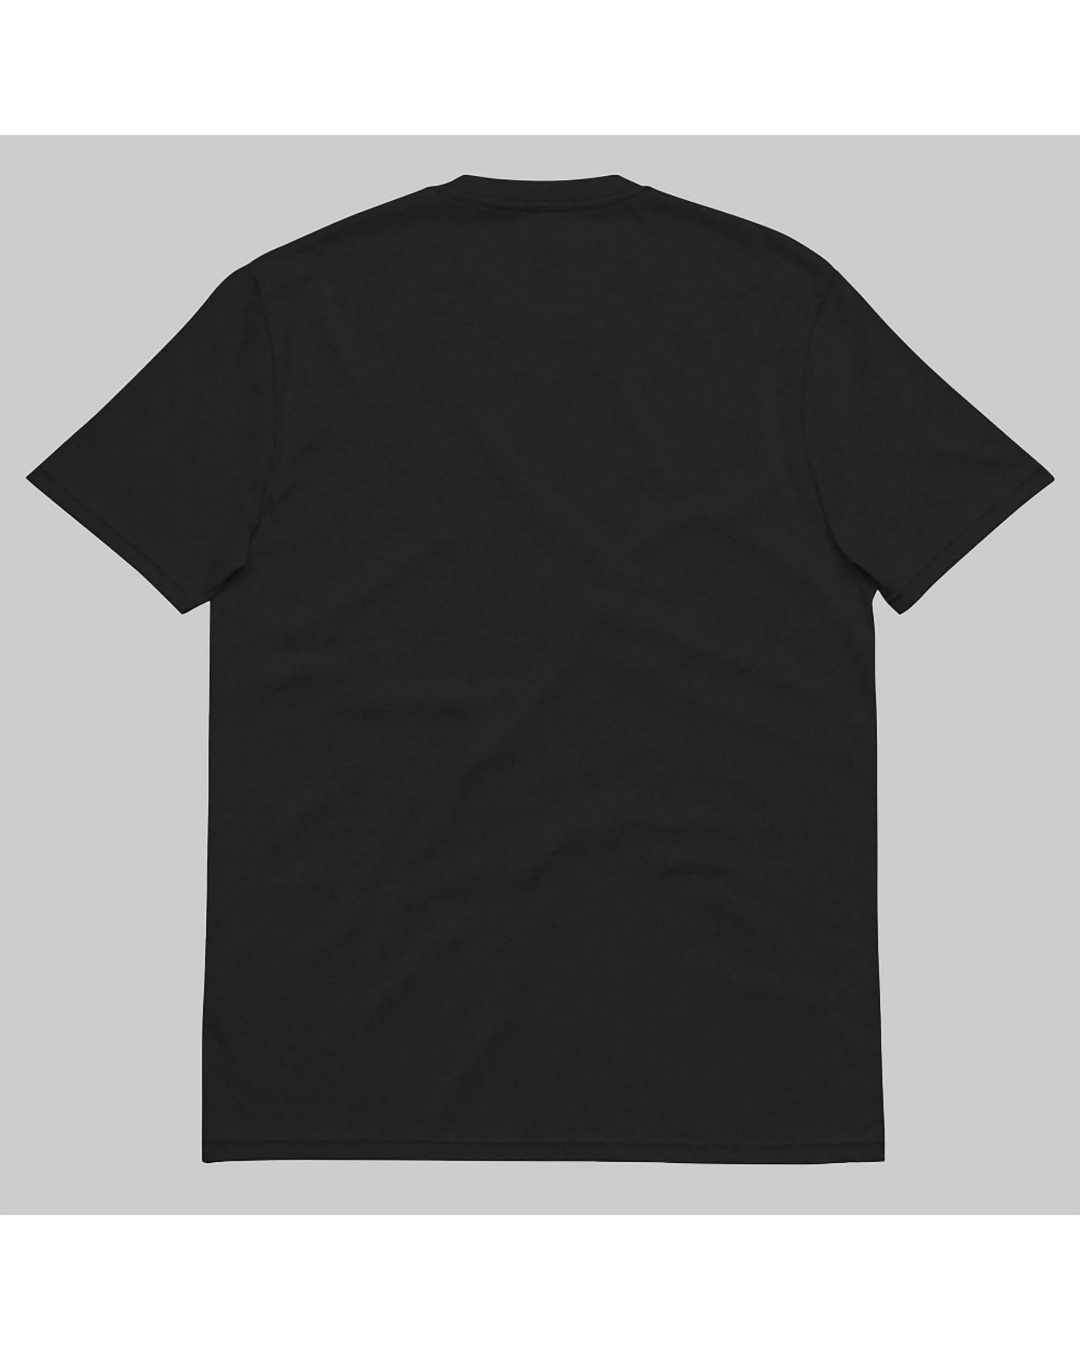 Shop Women's Black Suit Up Typography Loose Fit T-shirt